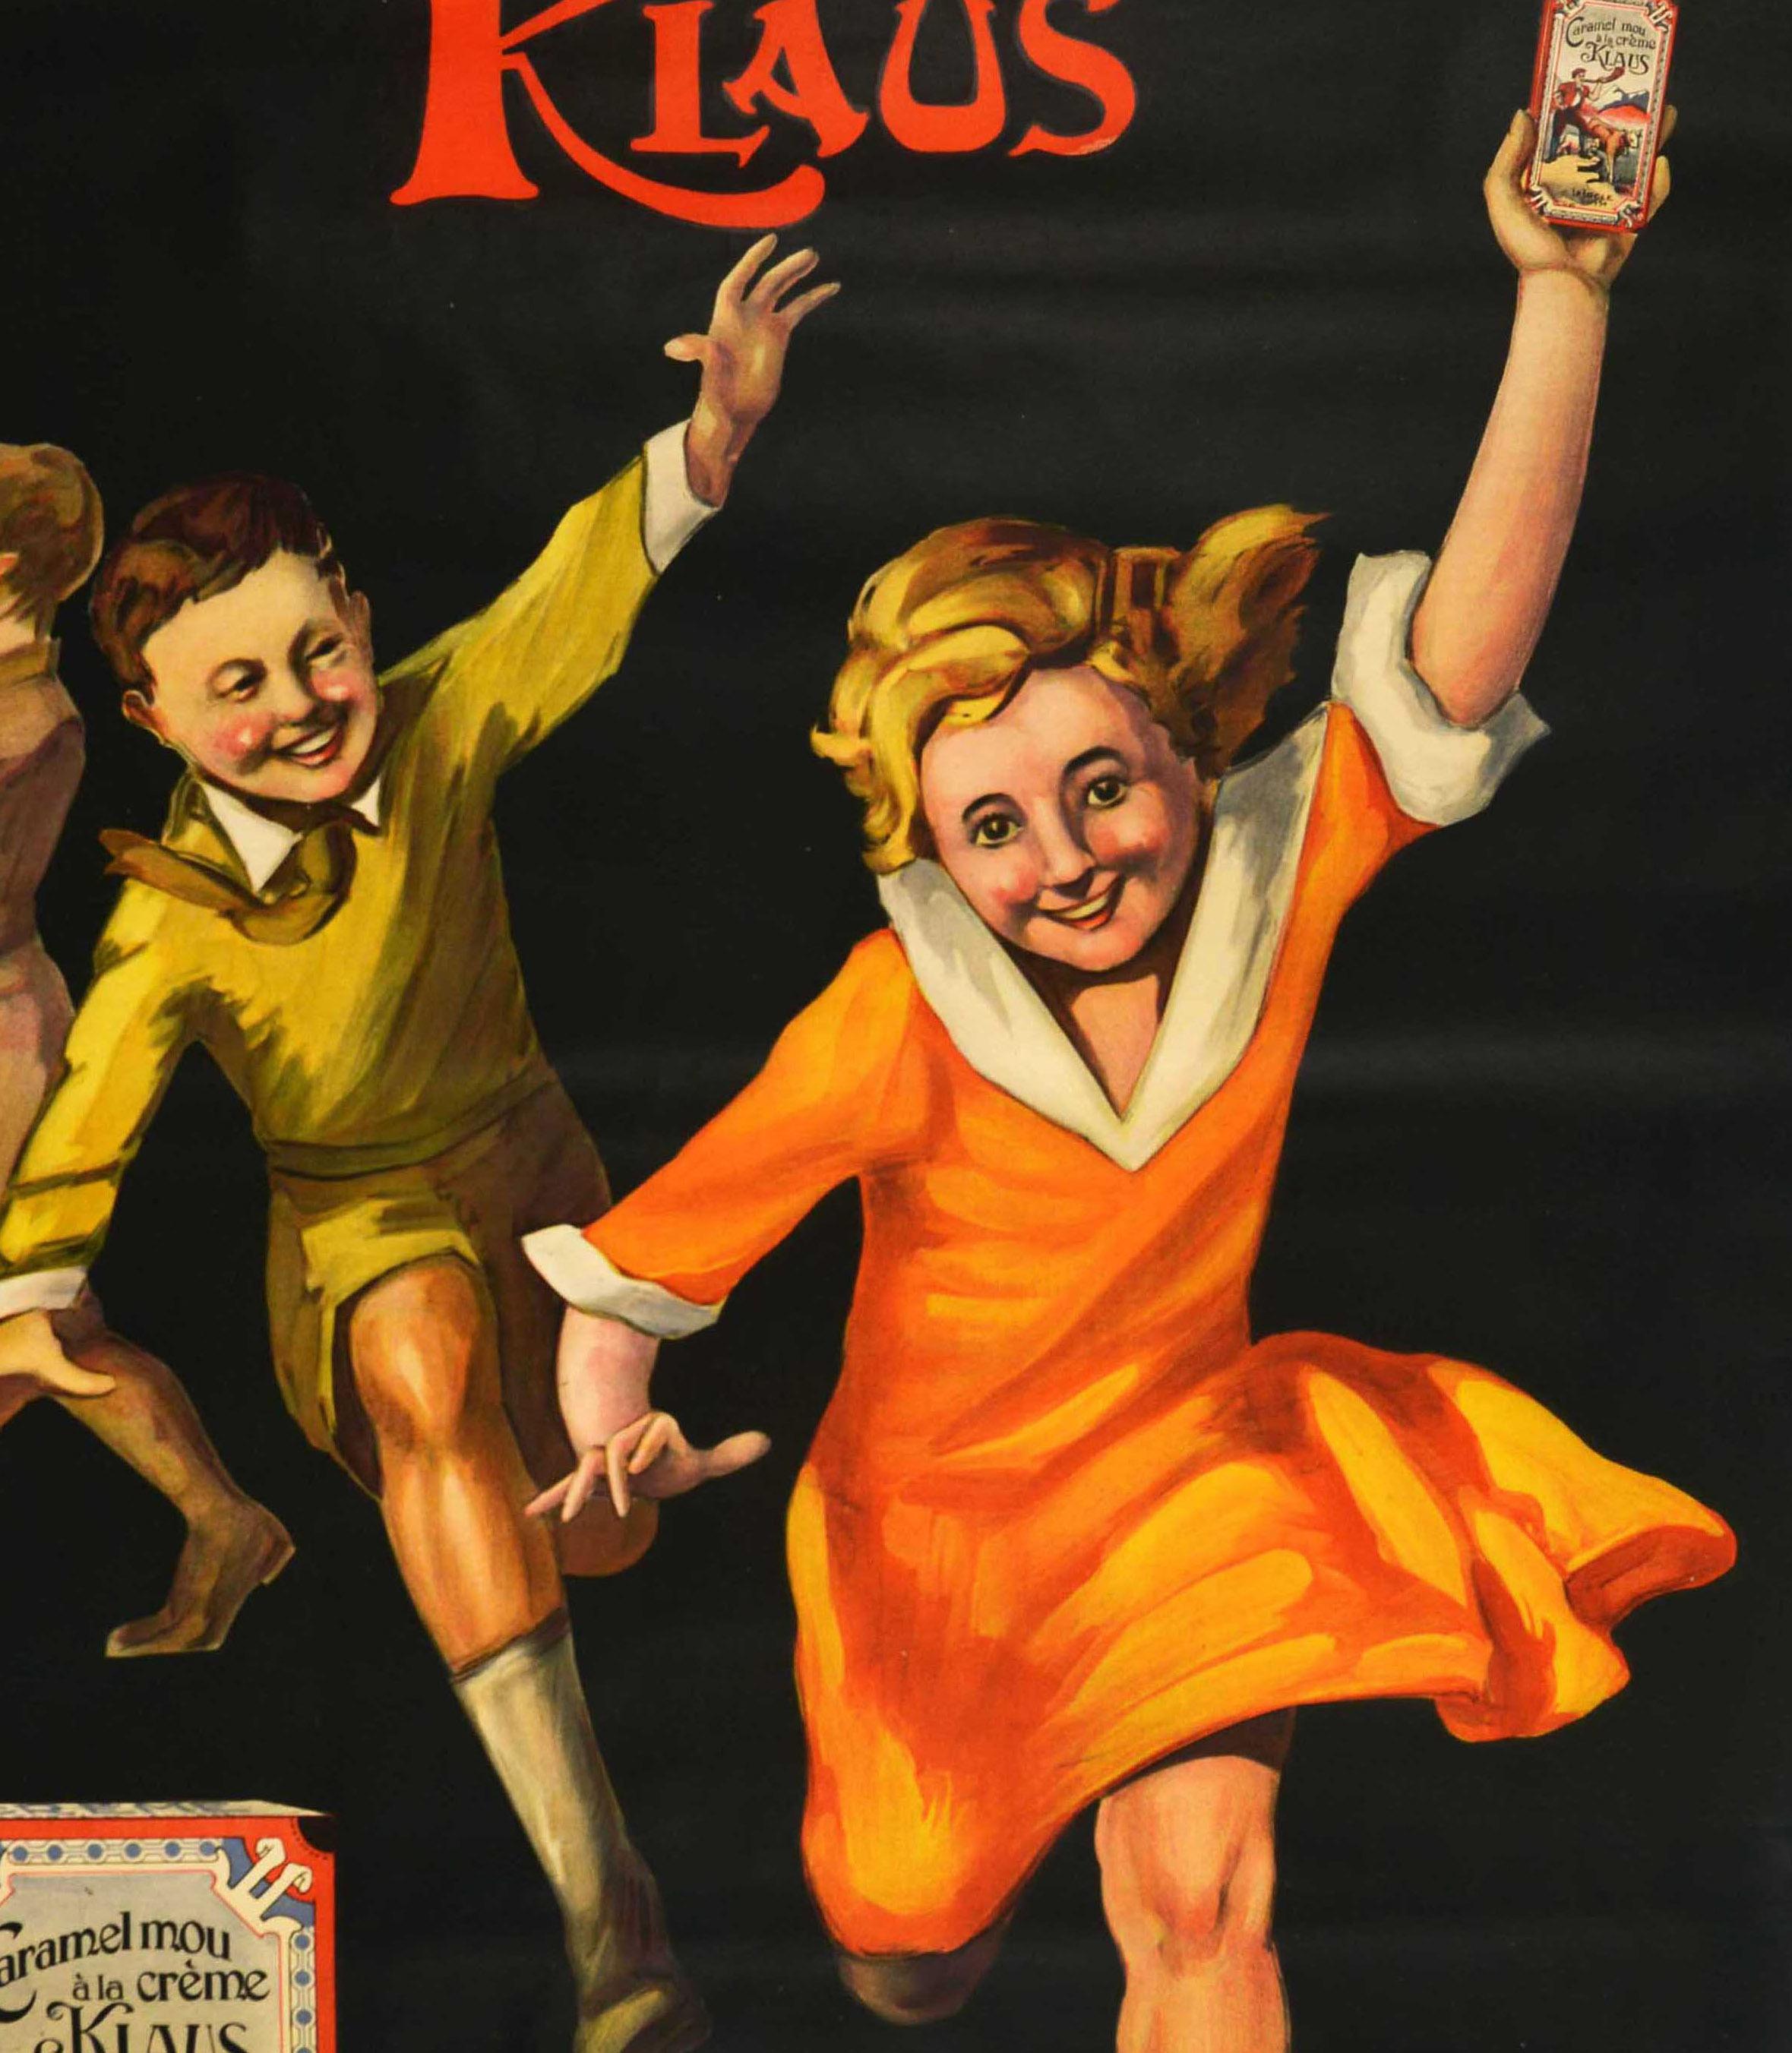 Originelles Werbeplakat für eine Schweizer Schokoladenfirma - Caramel Mou a la Creme Klaus - mit einem großartigen Design von Giovanni Bonfatti (geb. 1904), das fröhliche Kinder zeigt, die auf einem Hintergrund rennen, wobei das Mädchen auf der